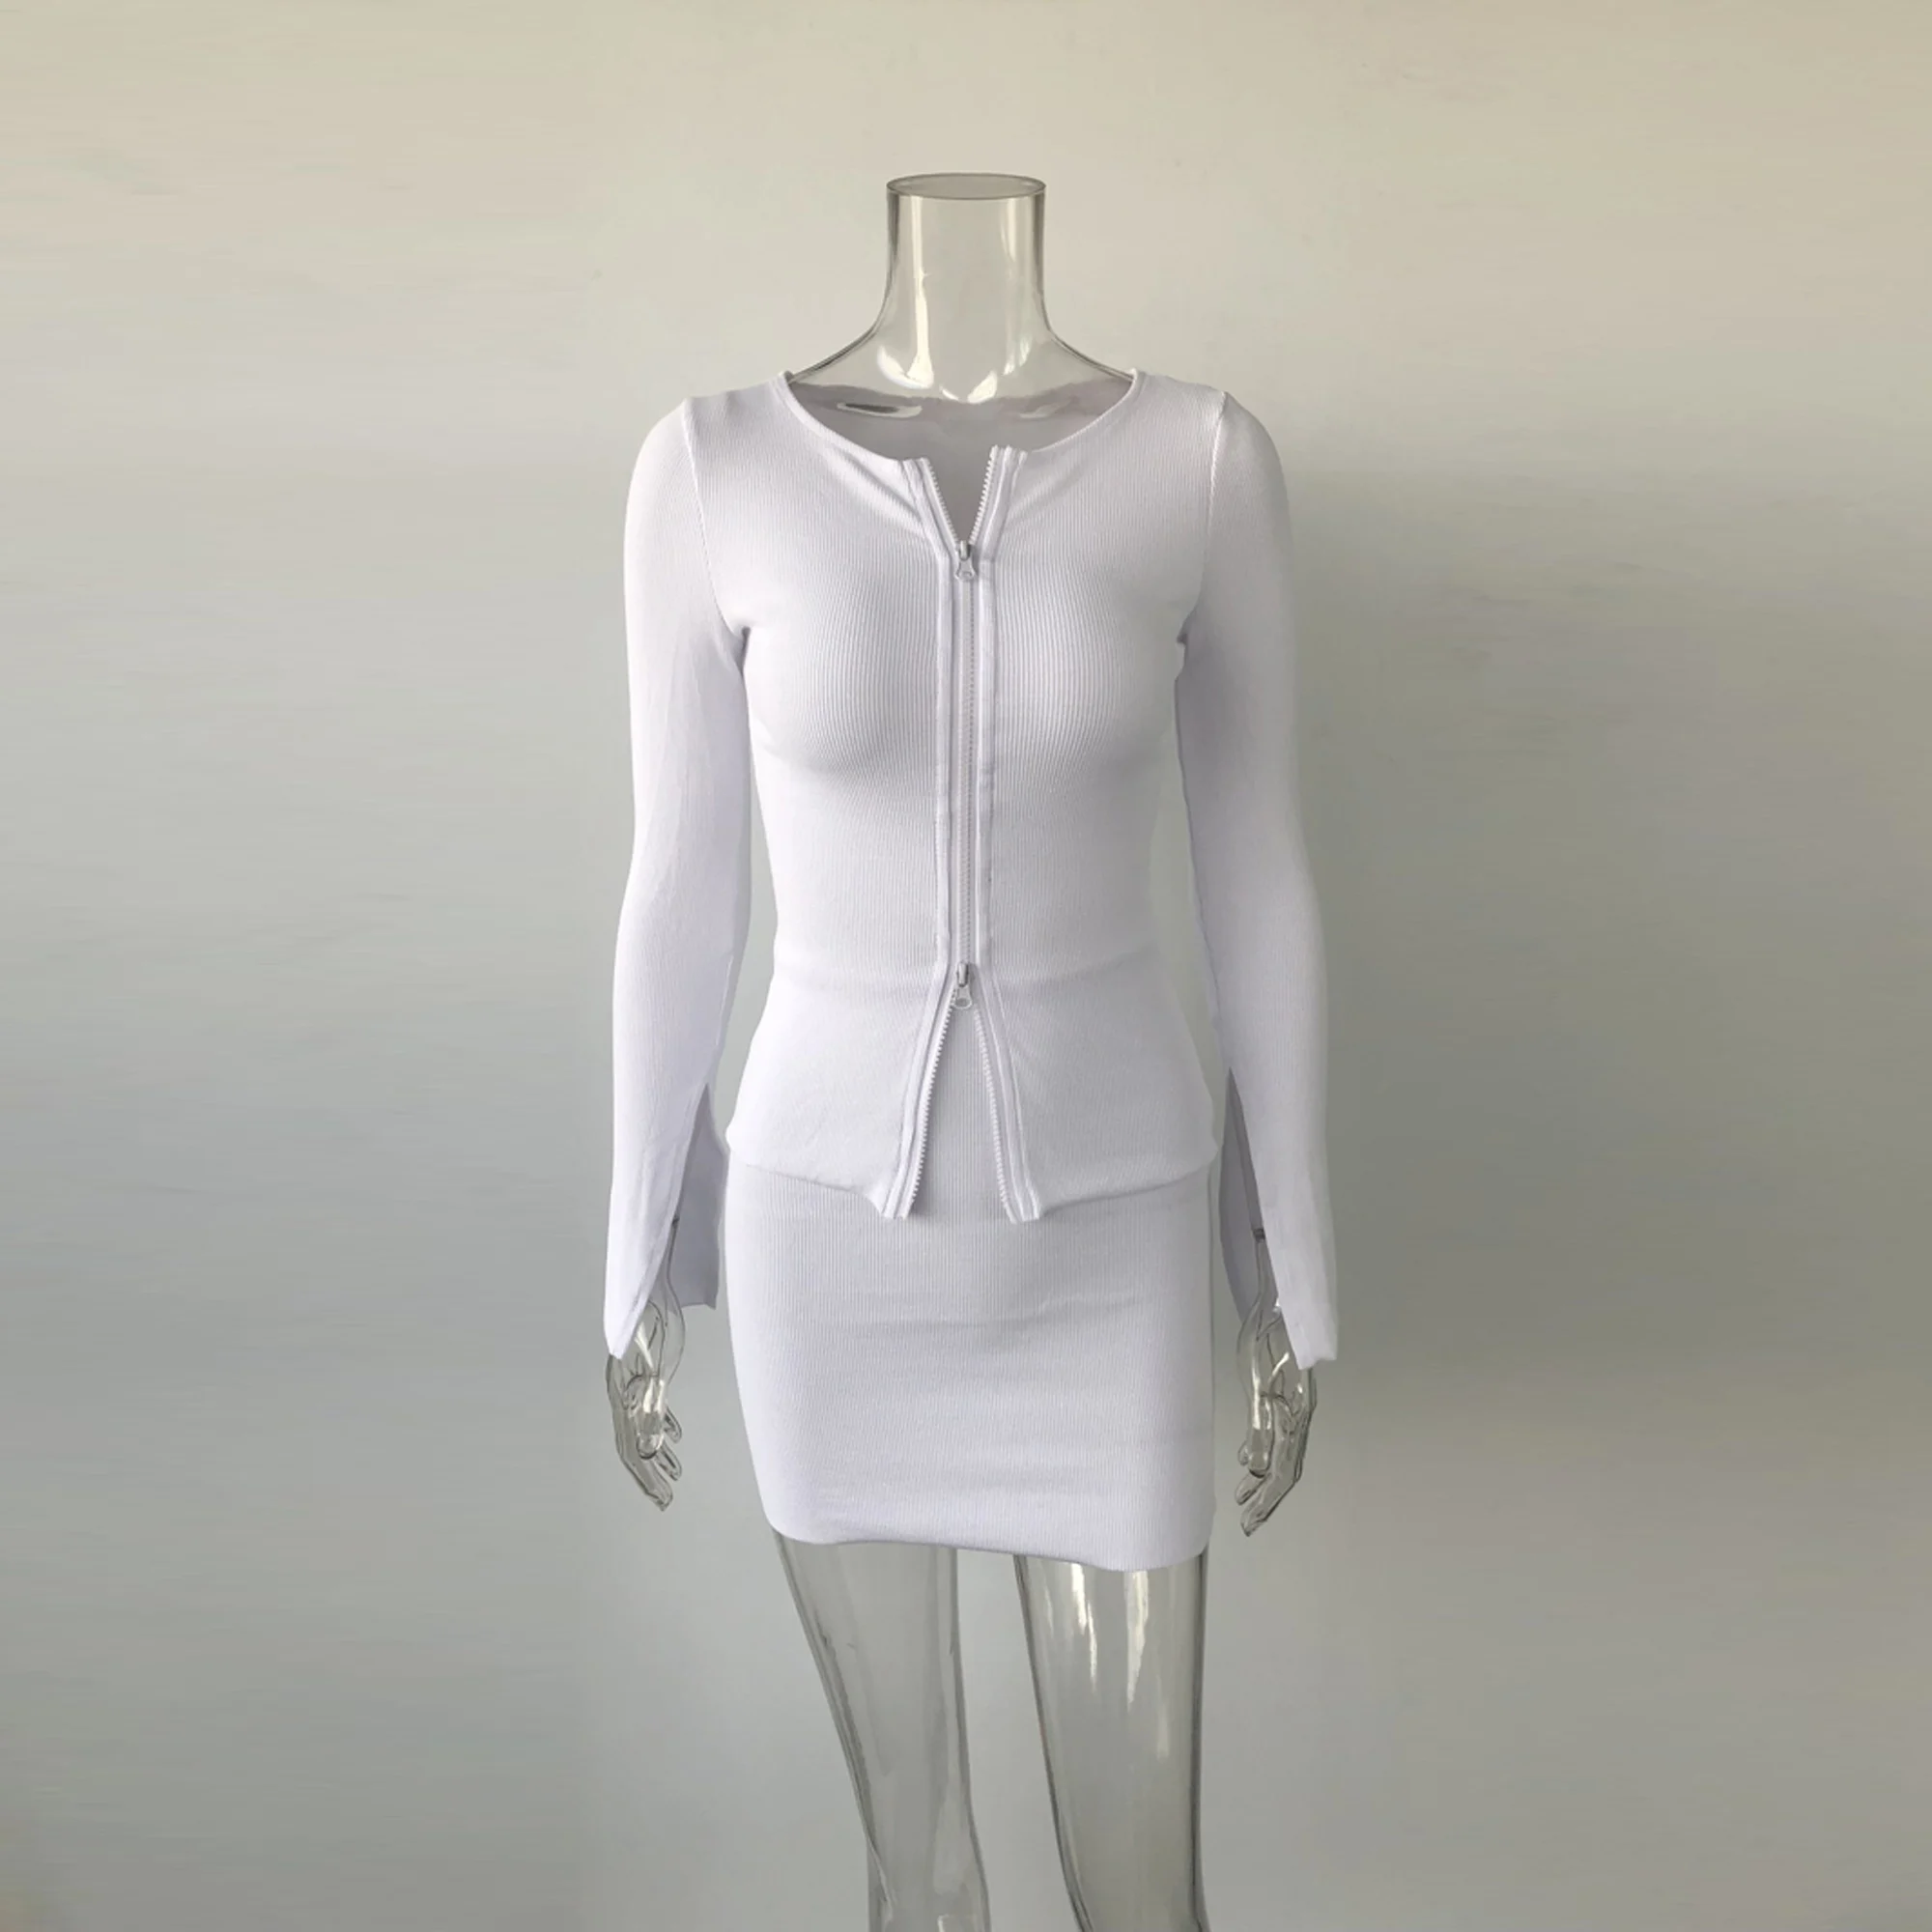 XLLAIS хлопок ребристый белый из двух частей наряды для женщин двойной молнии пальто из мягкой ткани и юбки карандаш подходящие 2 комплекта хорошее качество топы